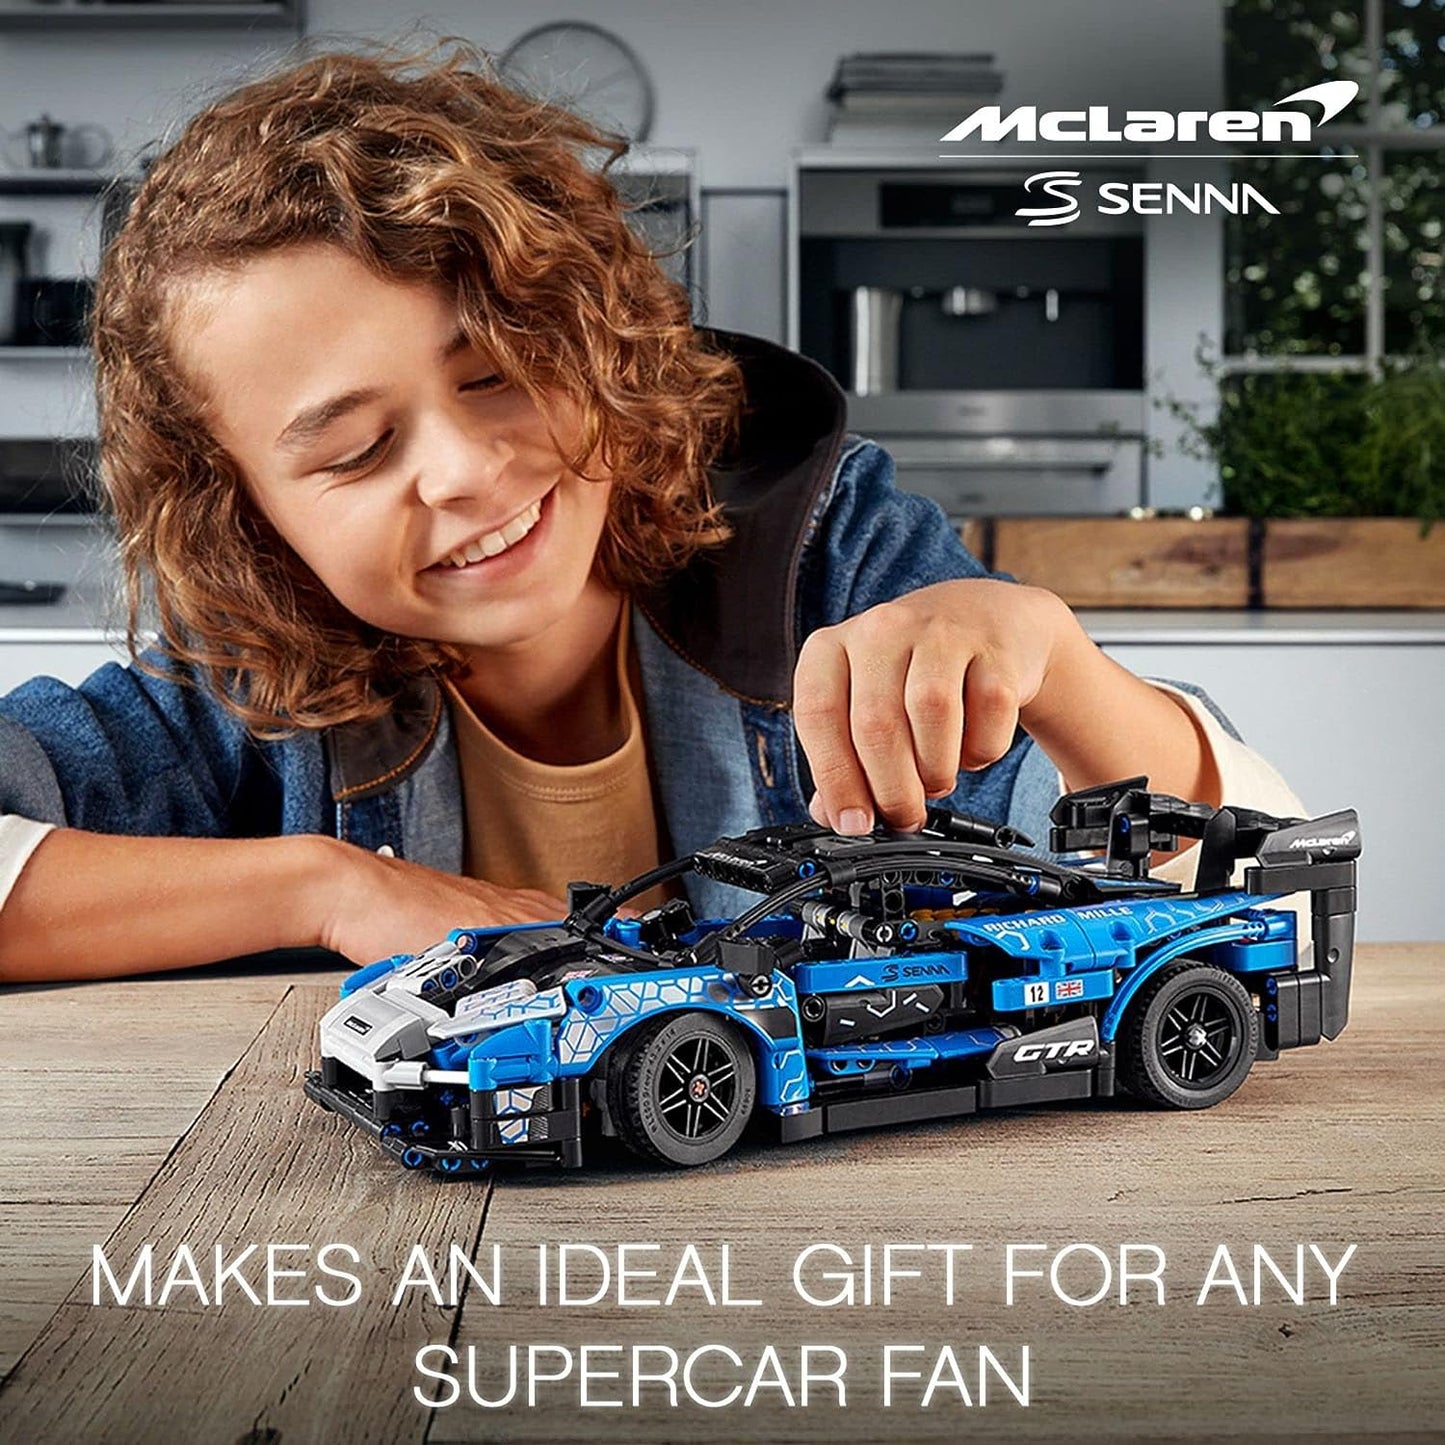 LEGO Kit de construcción de Modelo Technic™ 42123 McLaren Senna GTR™ (830 Piezas)